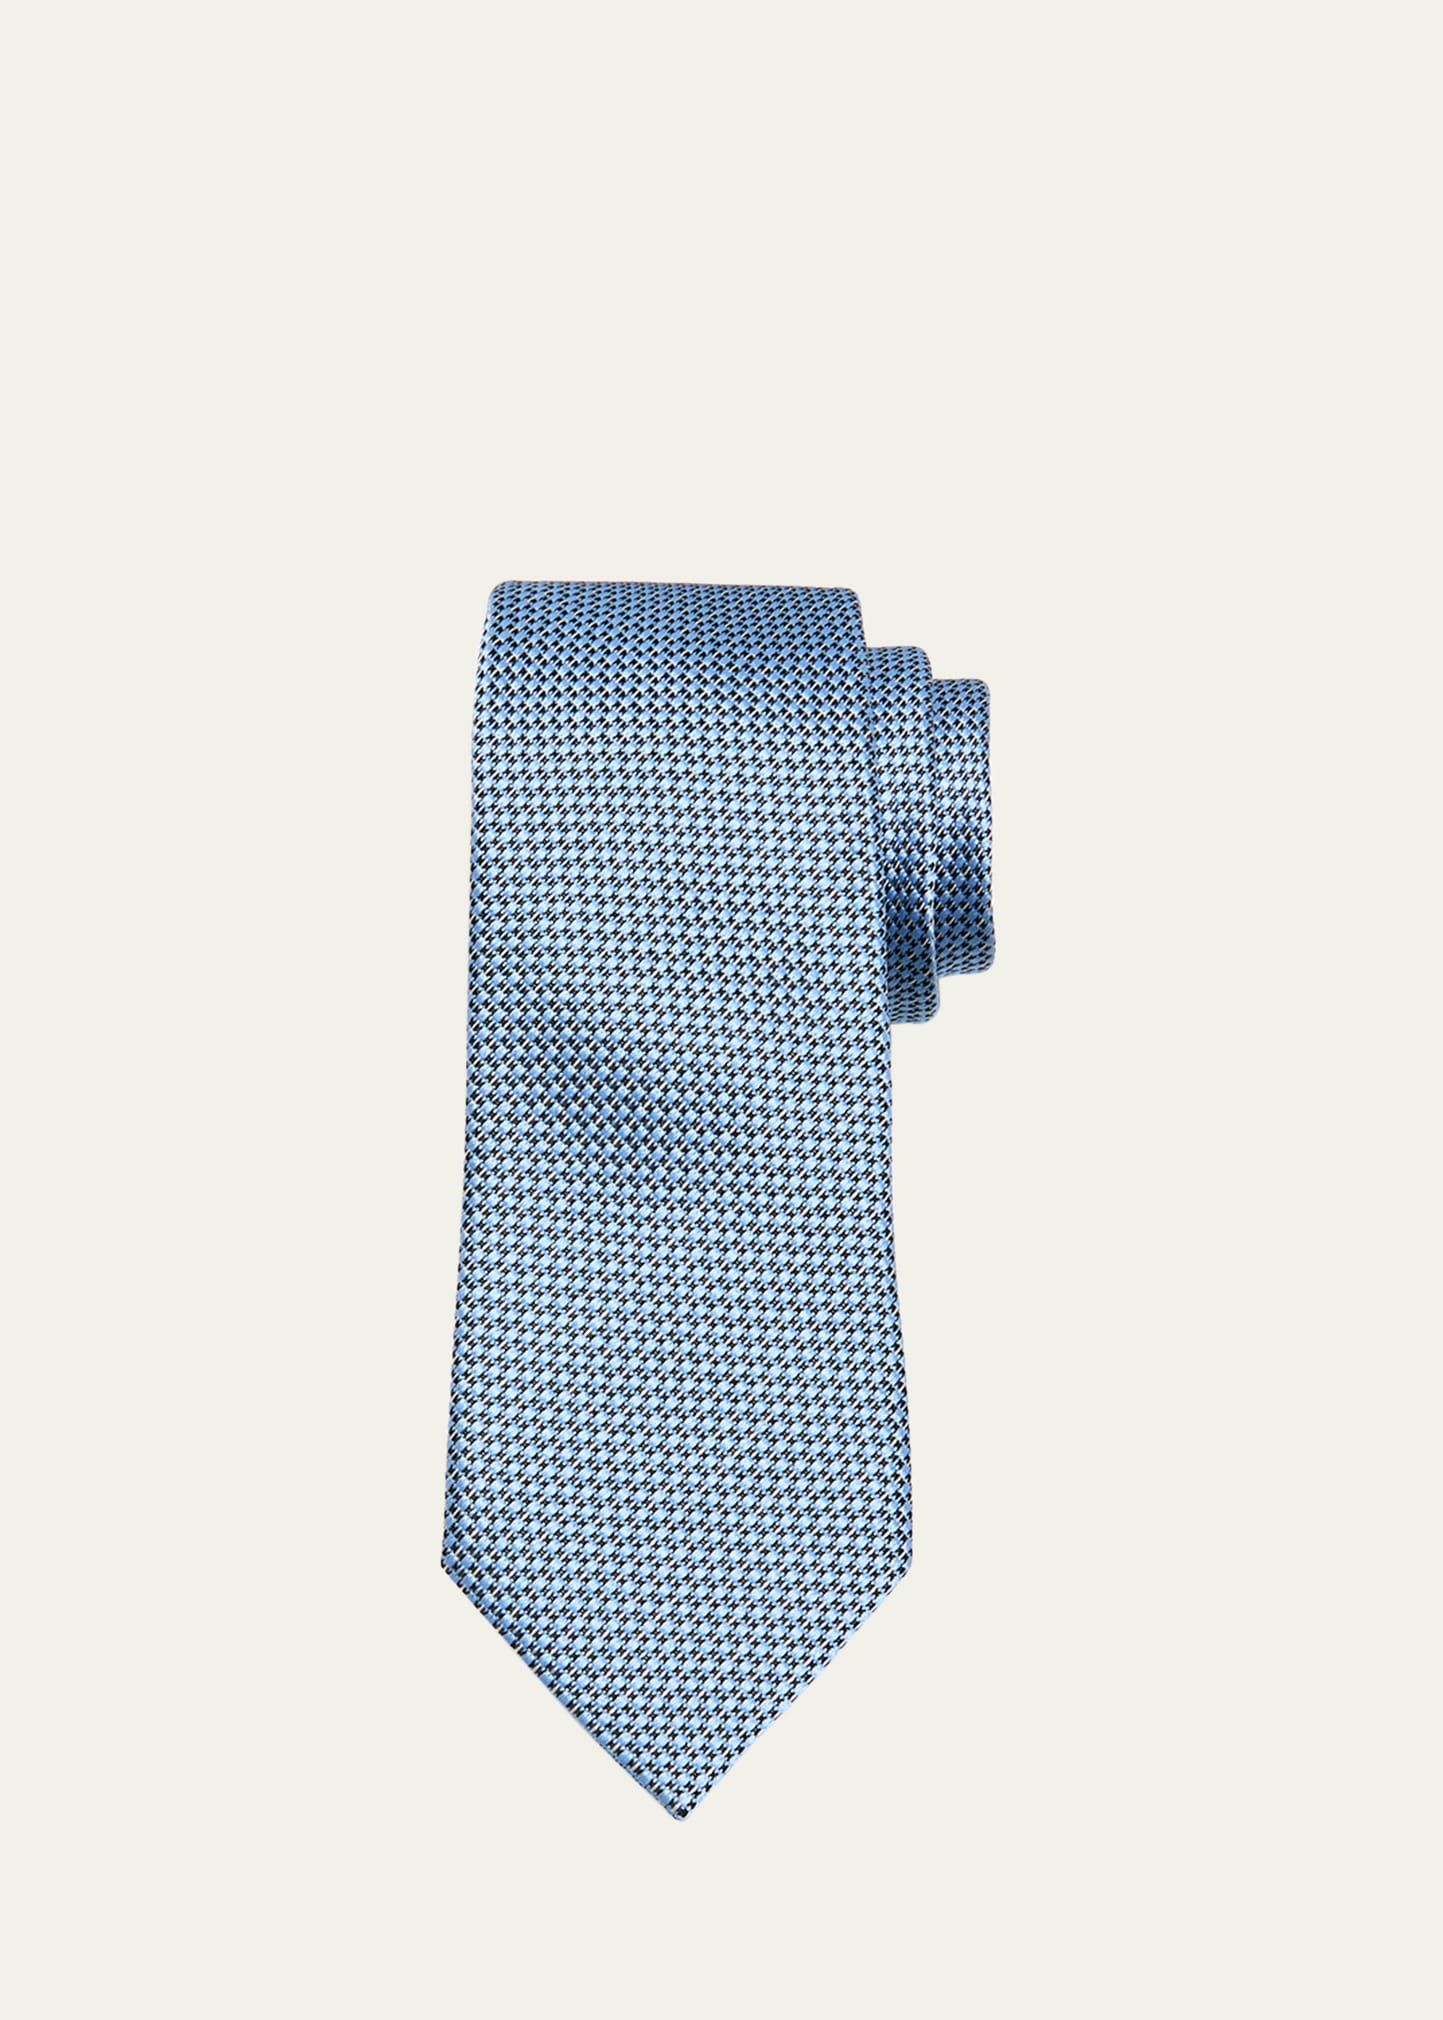 Zegna Men's Woven Silk Tie In Blue